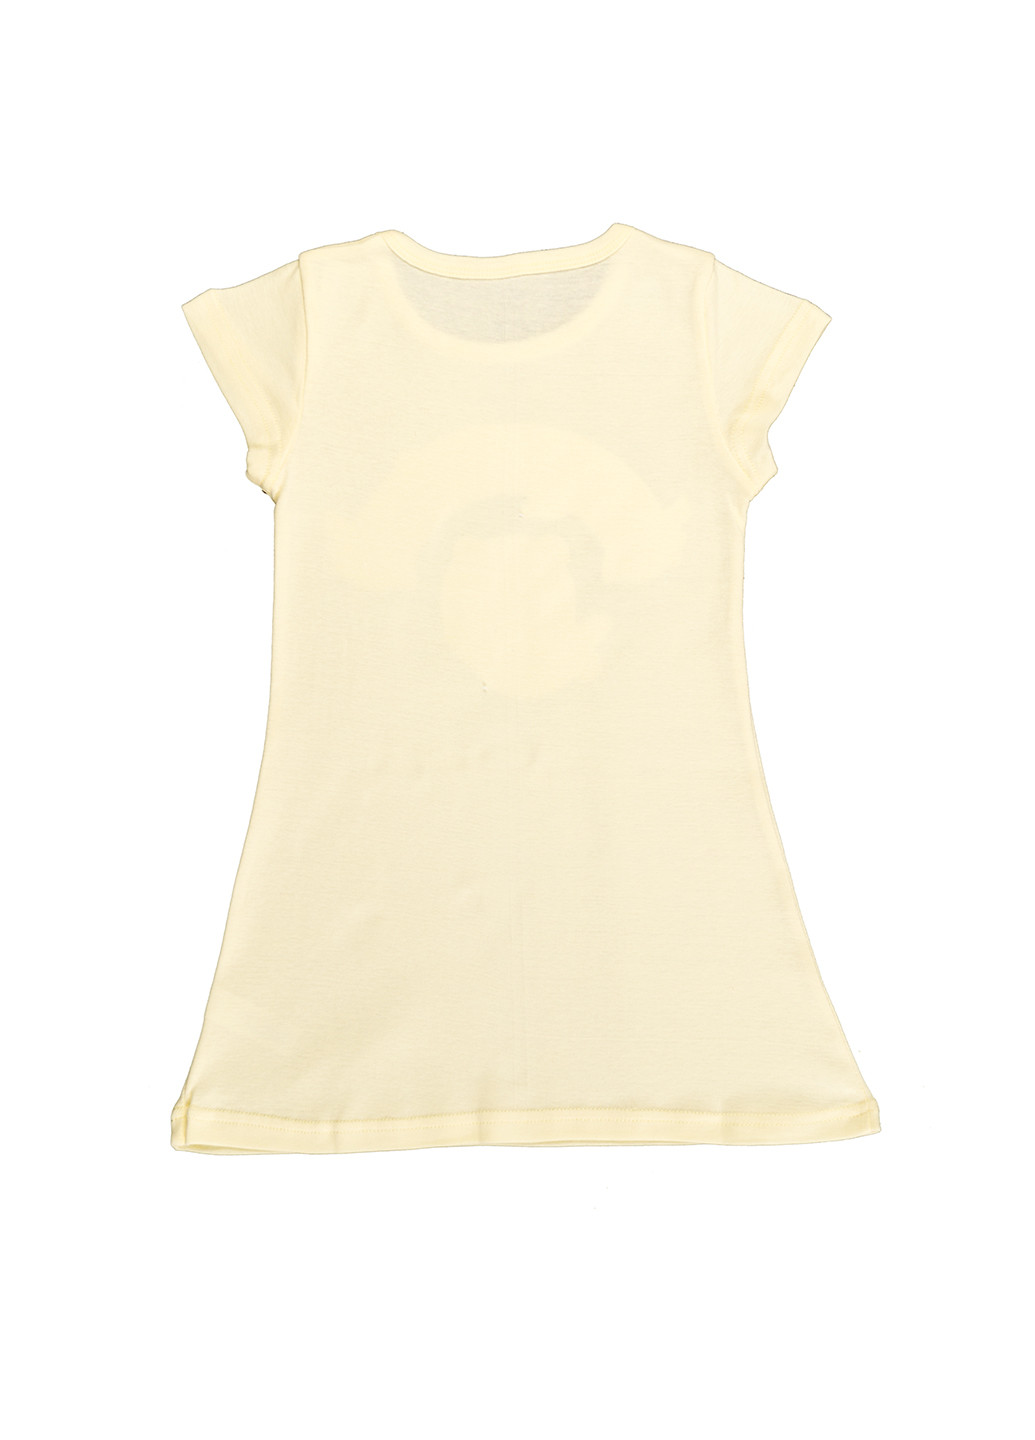 Ночная рубашка для девочки Фламинго Текстиль жёлтая